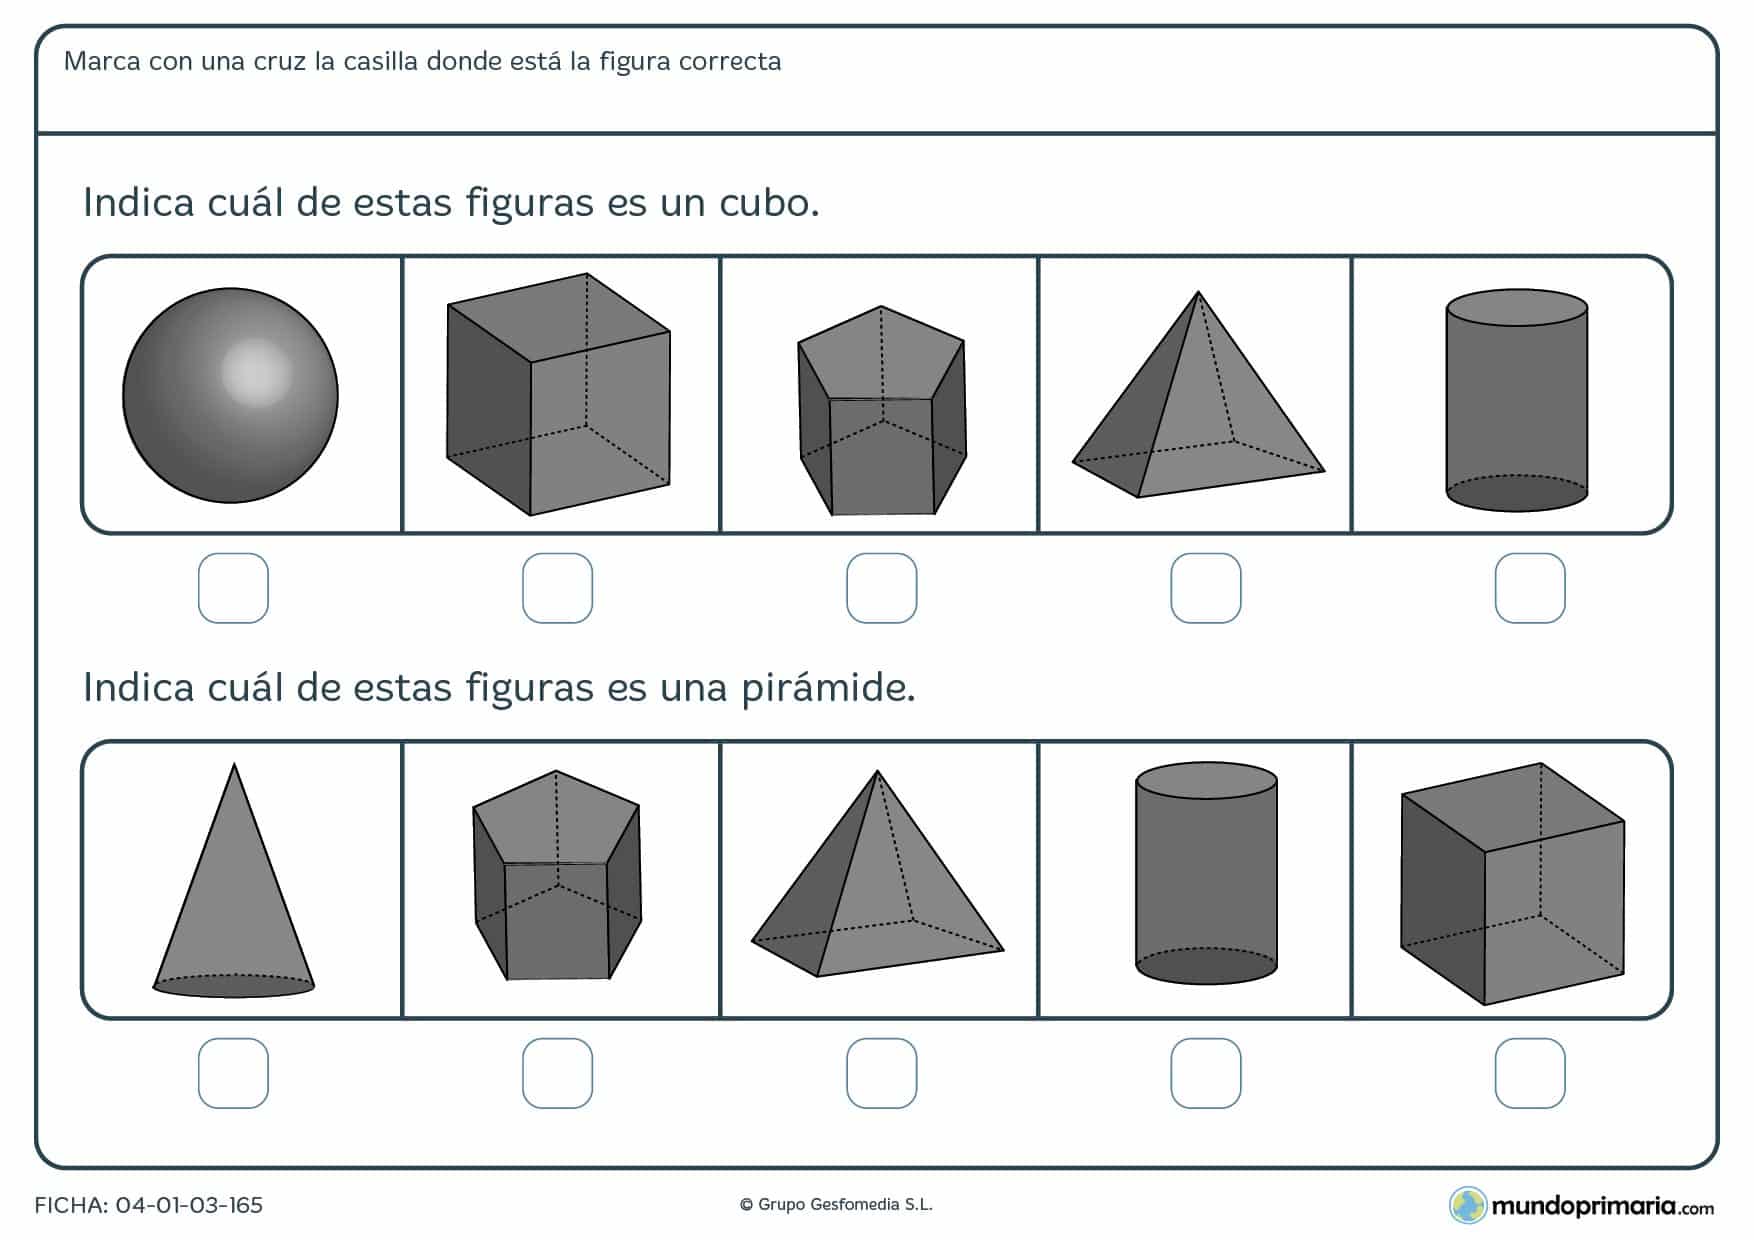 Ficha de identificar cubos y diferentes cuerpos geométrico señalando la respuesta correcta.